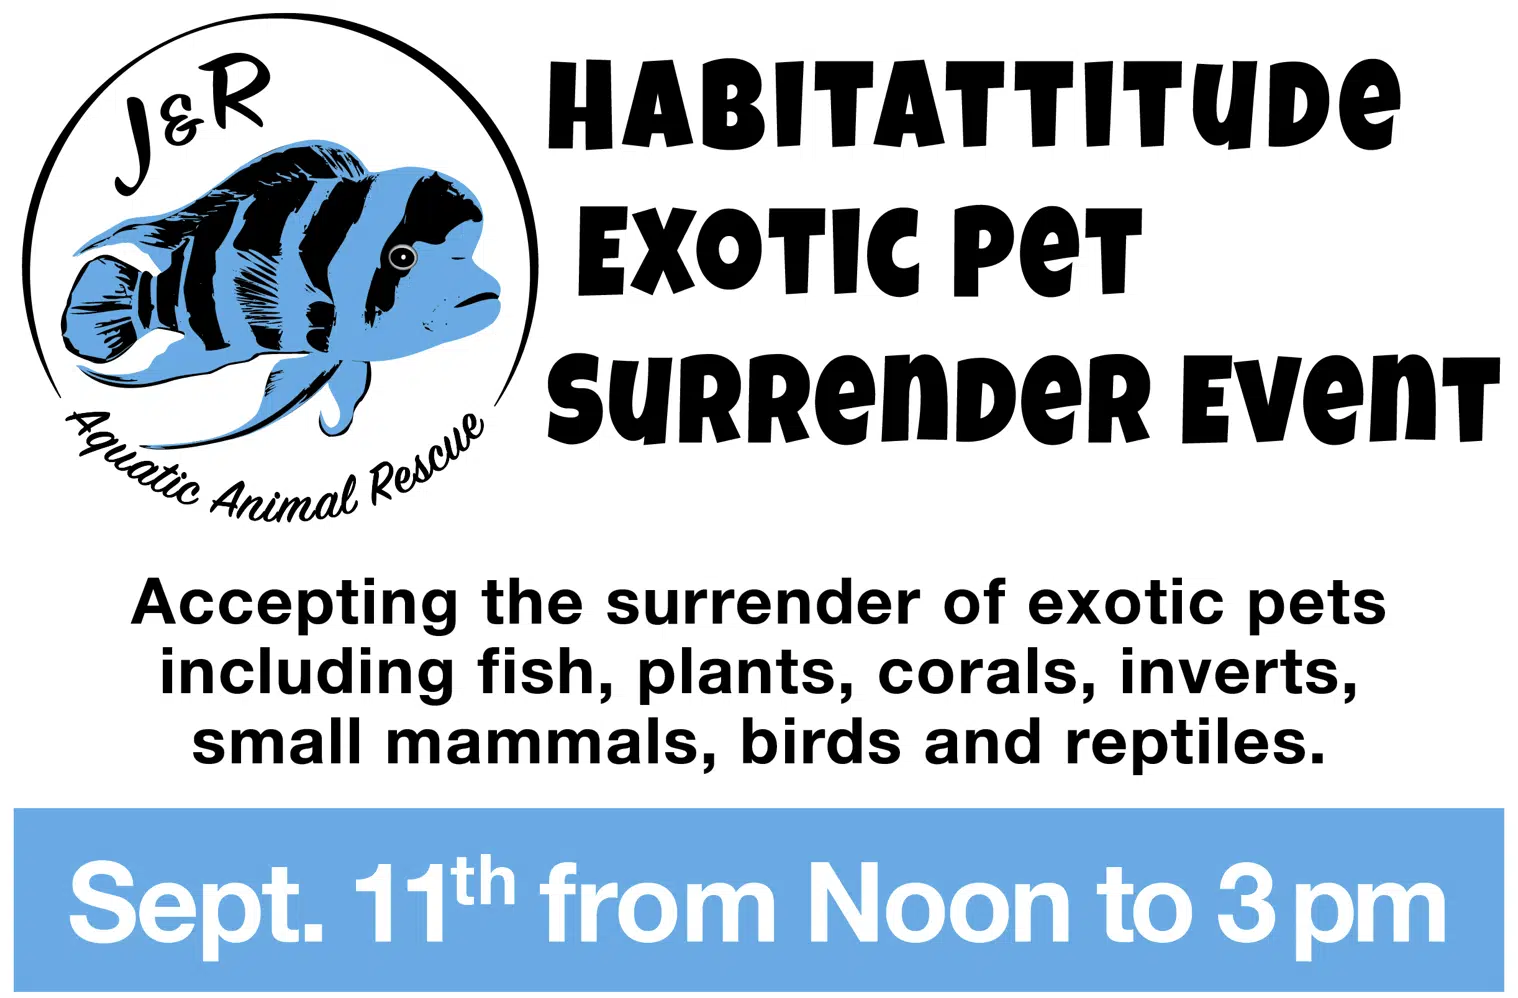 J&R Aquatic Animal Rescue to Host Exotic Pet Surrender Event